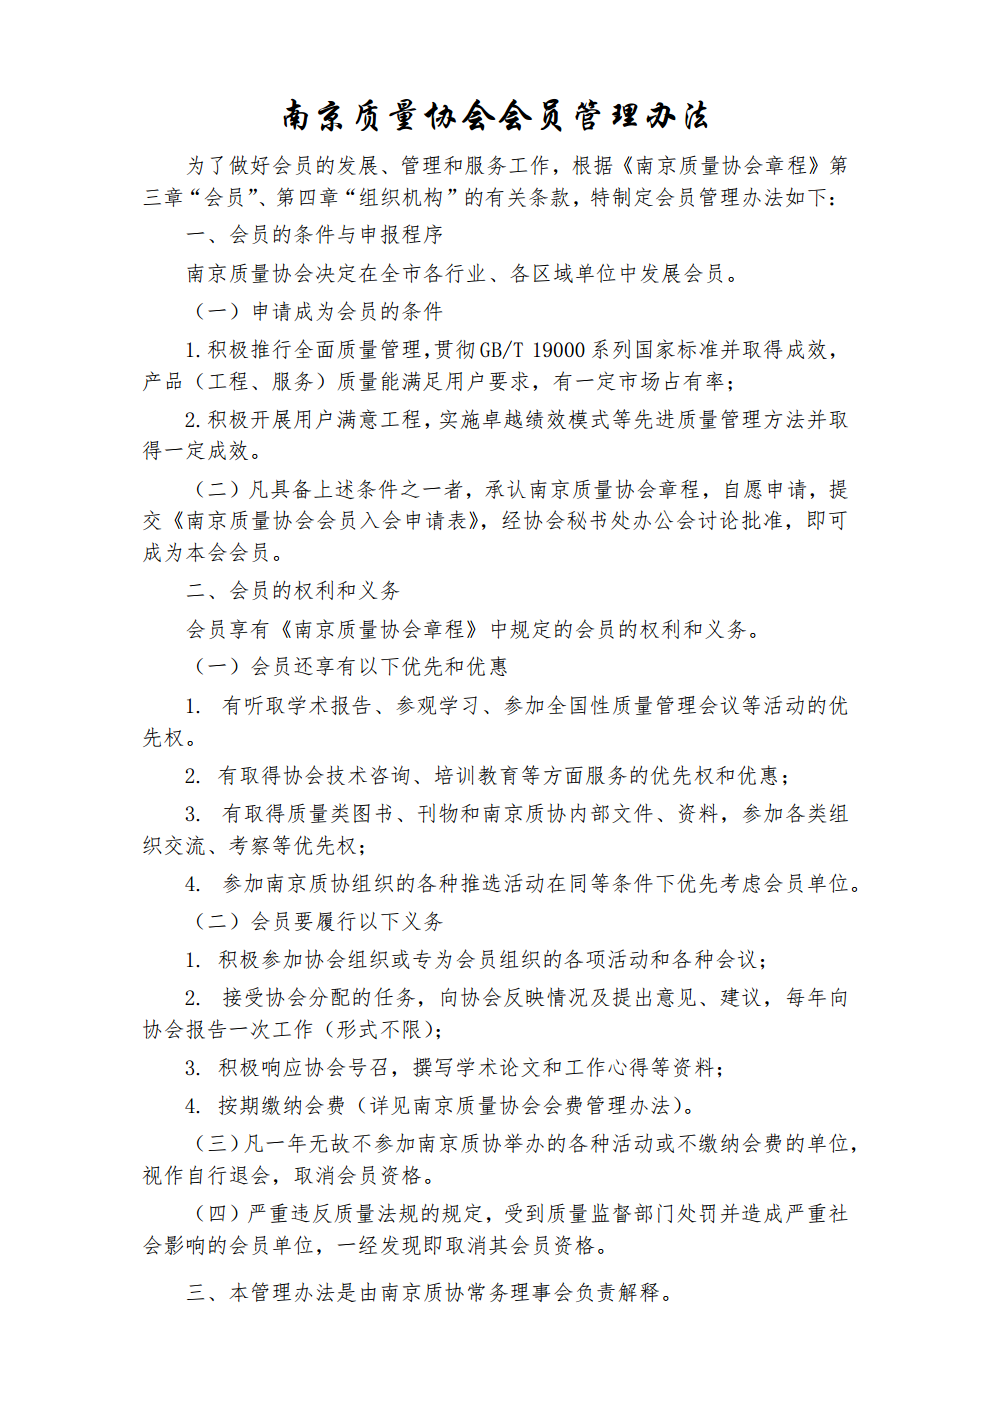 9 南京质量协会会员管理办法.png